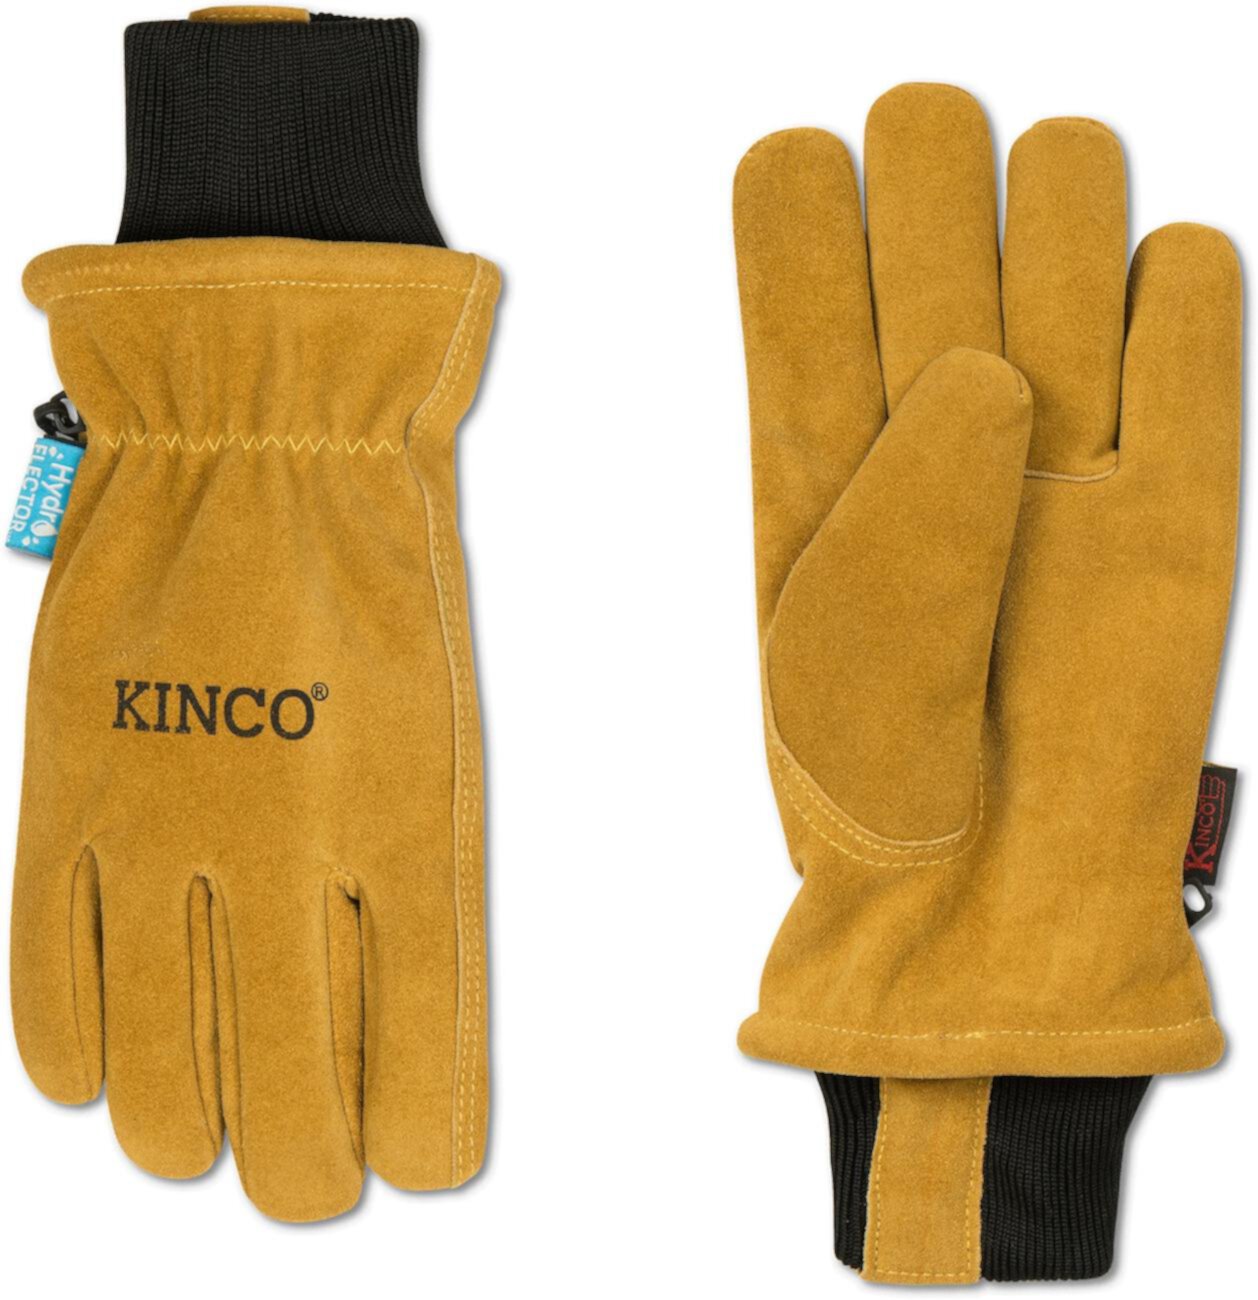 Водительские перчатки из воловьей кожи с подкладкой из замши Kinco